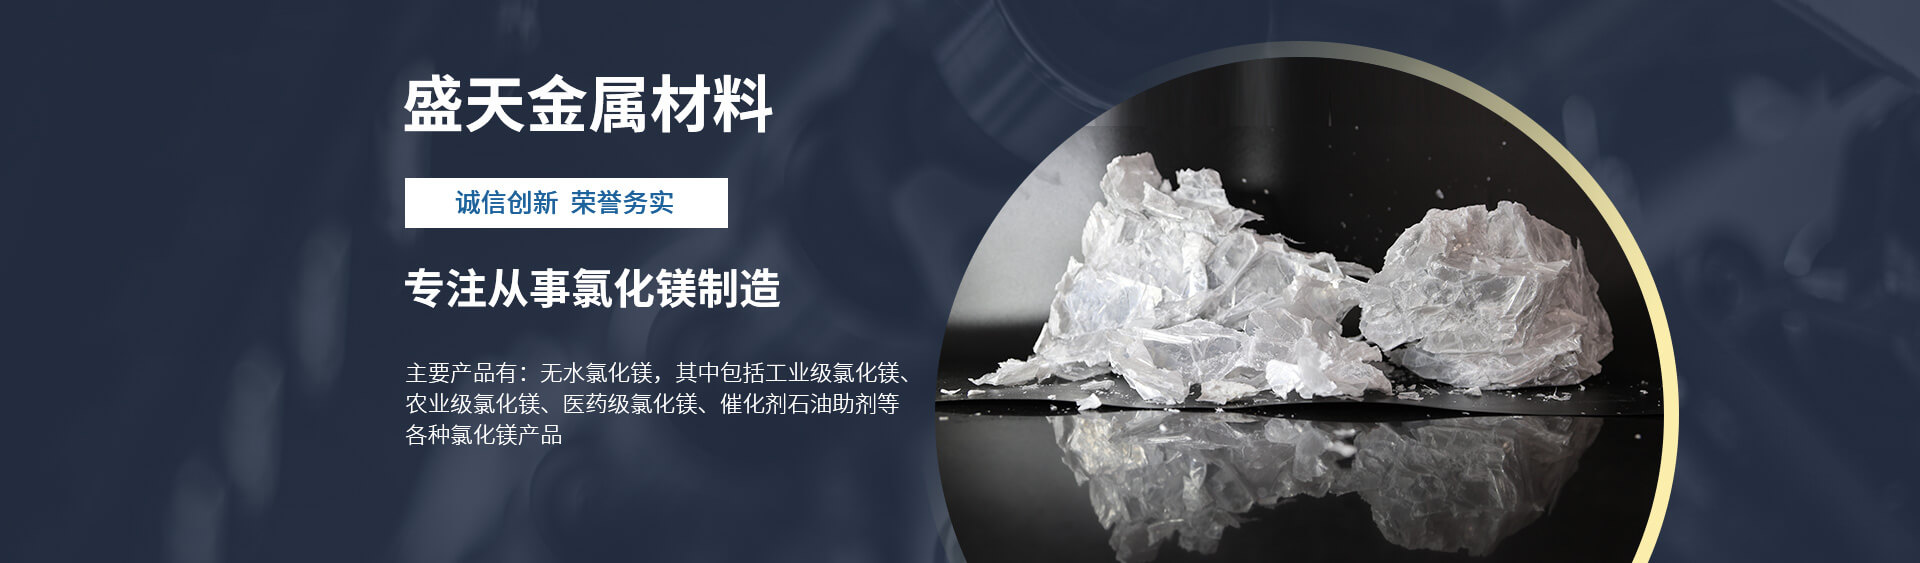 块状氯化镁_片状氯化镁-威尼斯娱人城官网7798(中国)有限公司